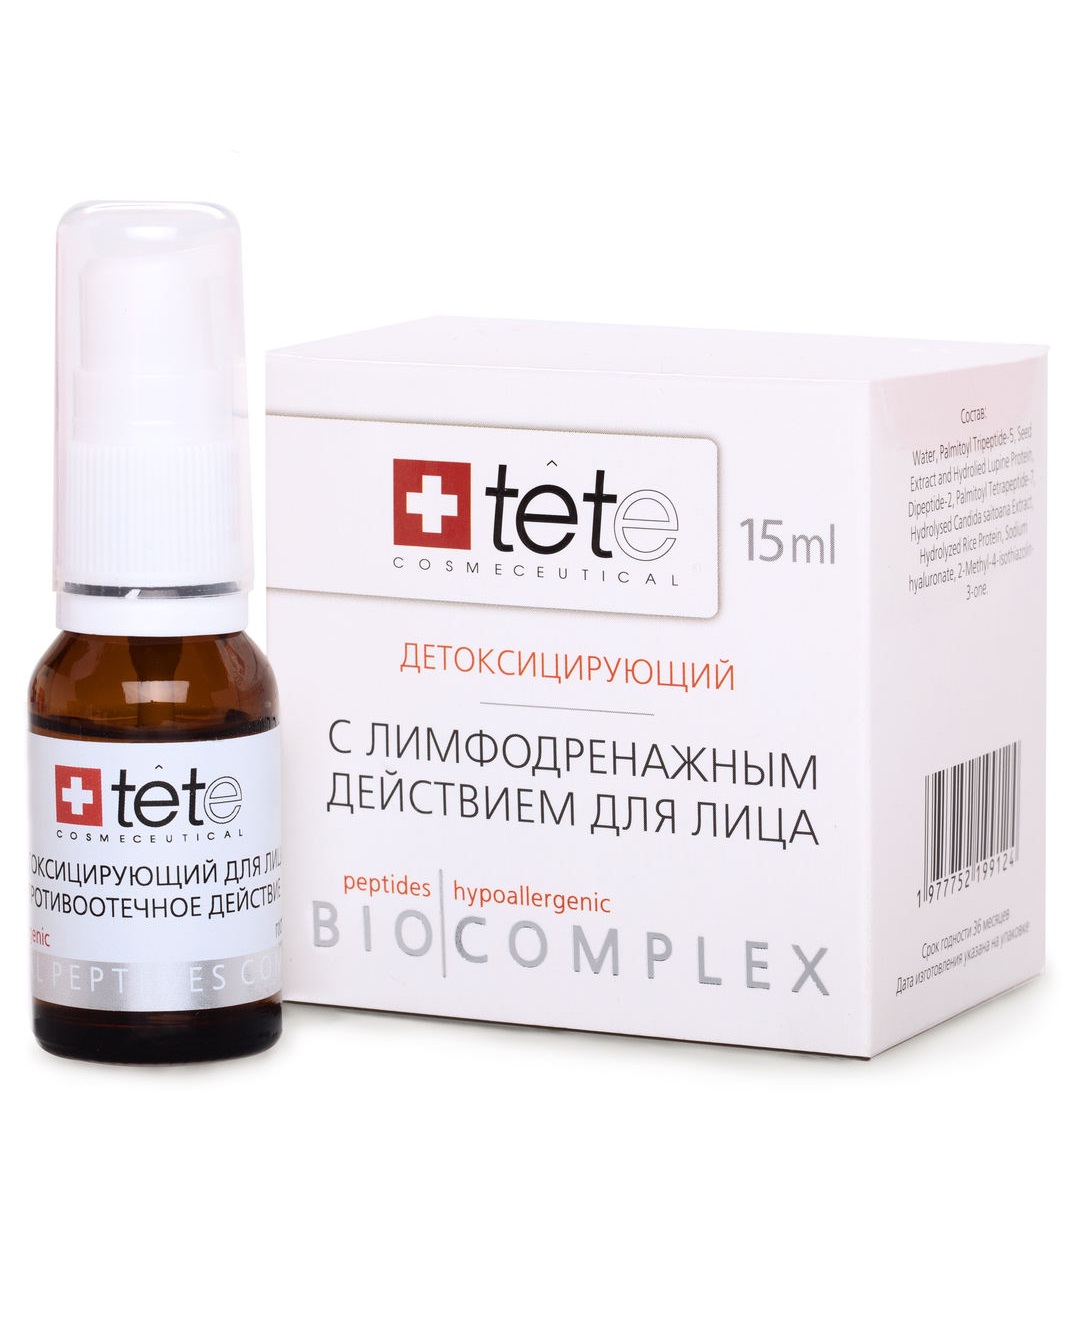 Биокомплекс детоксифицирующий с лимфодренажным действием TETe Cosmeceutical tete cosmeceutical лосьон косметический biocomplex detoxifying therapy 15